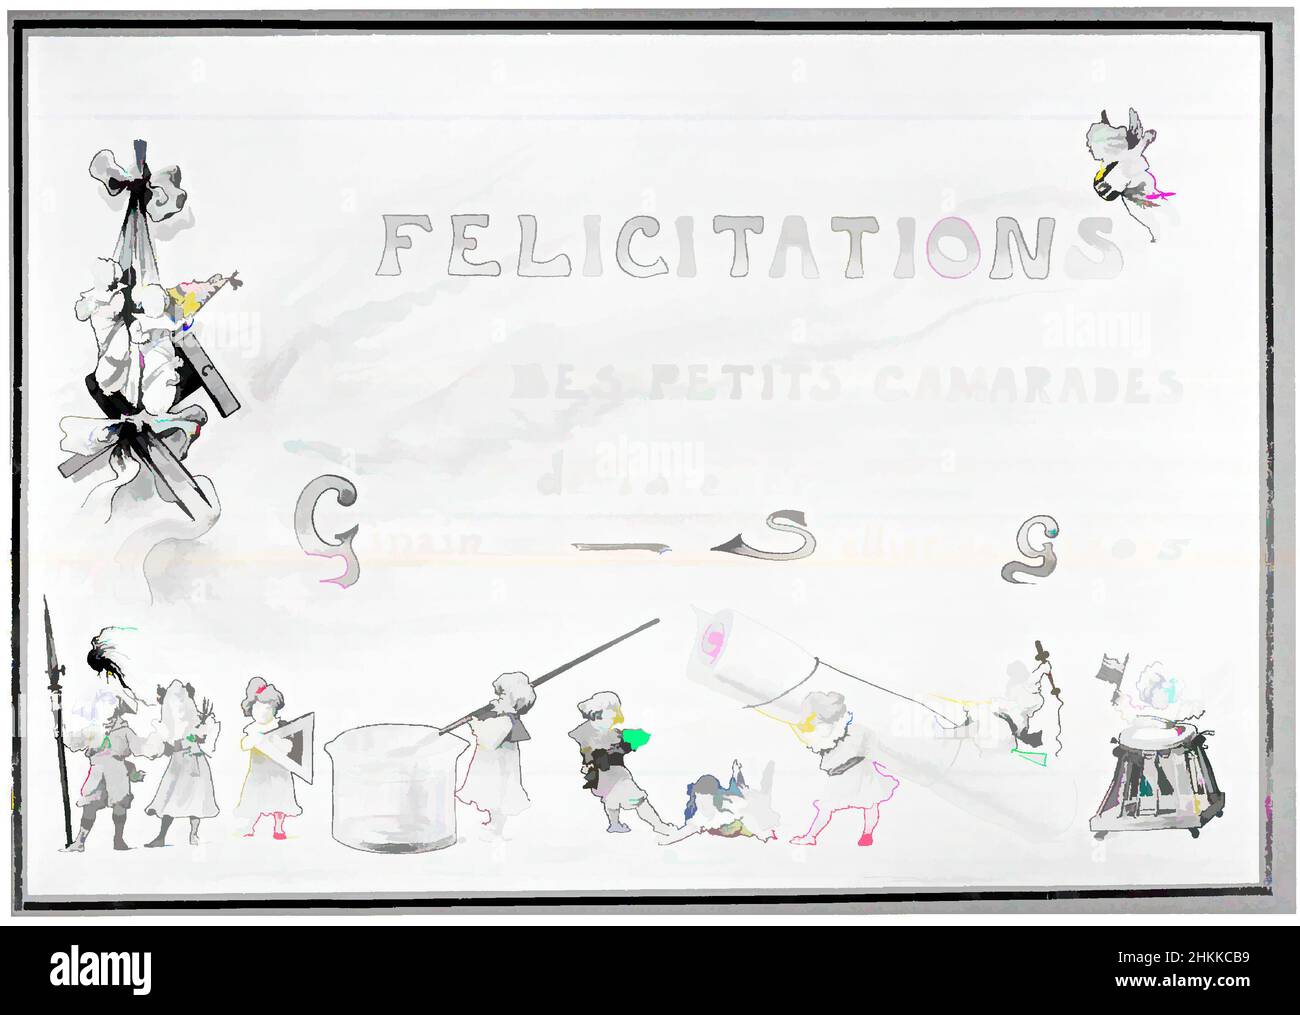 Kunst inspiriert von Felicitations, Félix Armand Marie Jobbé-Duval, Französisch, 1821-1889, Aquarell, 1900, 18 x 26 1/8 Zoll, 45,7 x 66,4 cm, Classic Works modernisiert von Artotop mit einem Schuss Moderne. Formen, Farbe und Wert, auffällige visuelle Wirkung auf Kunst. Emotionen durch Freiheit von Kunstwerken auf zeitgemäße Weise. Eine zeitlose Botschaft, die eine wild kreative neue Richtung verfolgt. Künstler, die sich dem digitalen Medium zuwenden und die Artotop NFT erschaffen Stockfoto